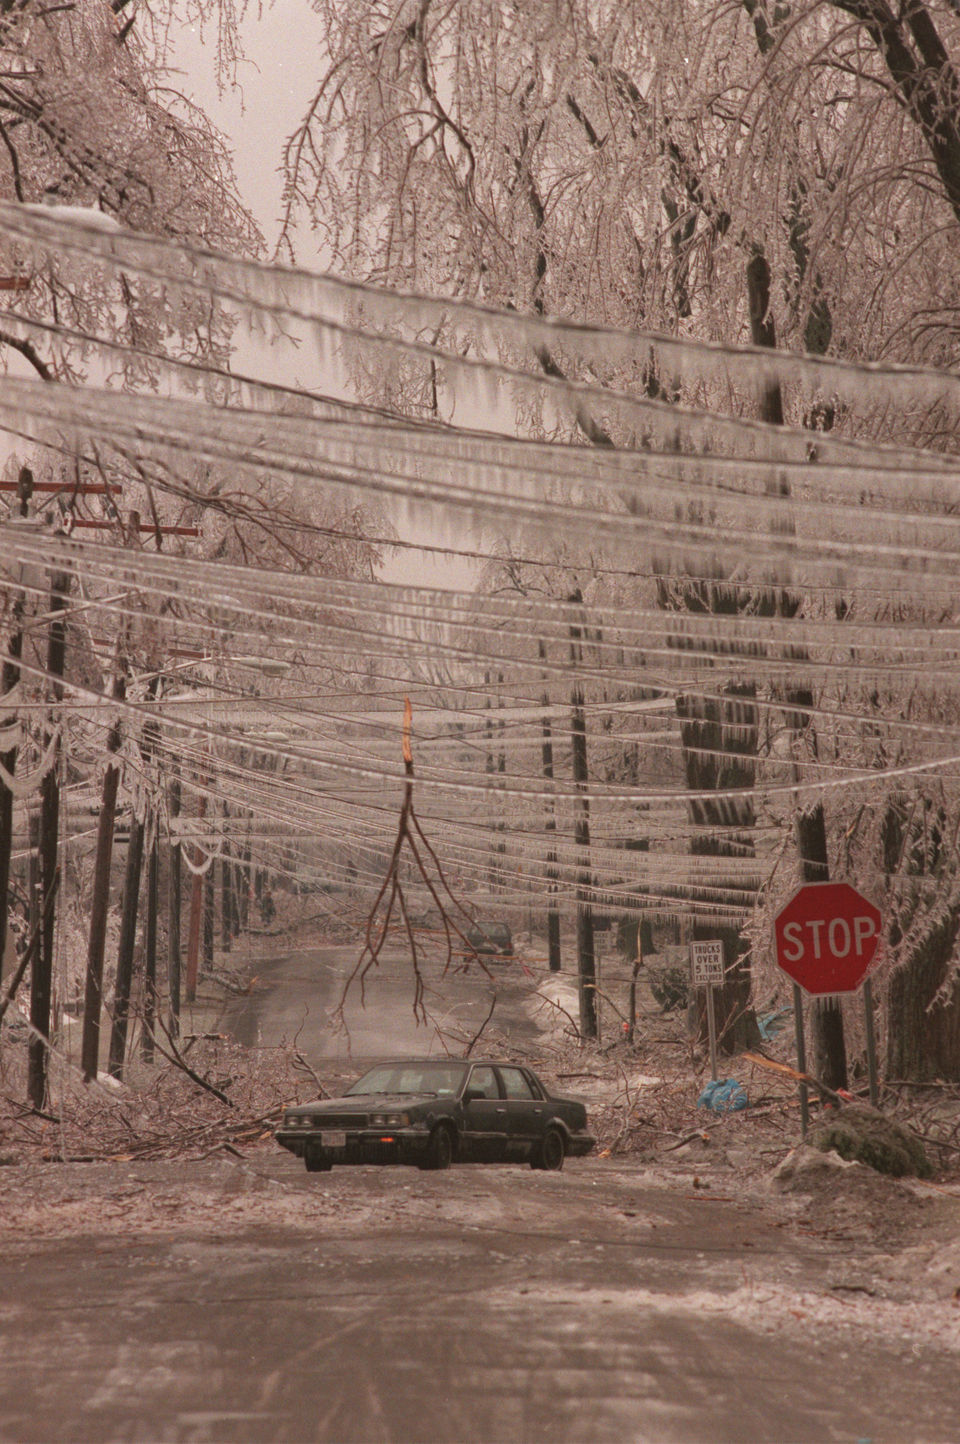 Boyd Street, Watertown, N.Y., 1998 Ice Storm